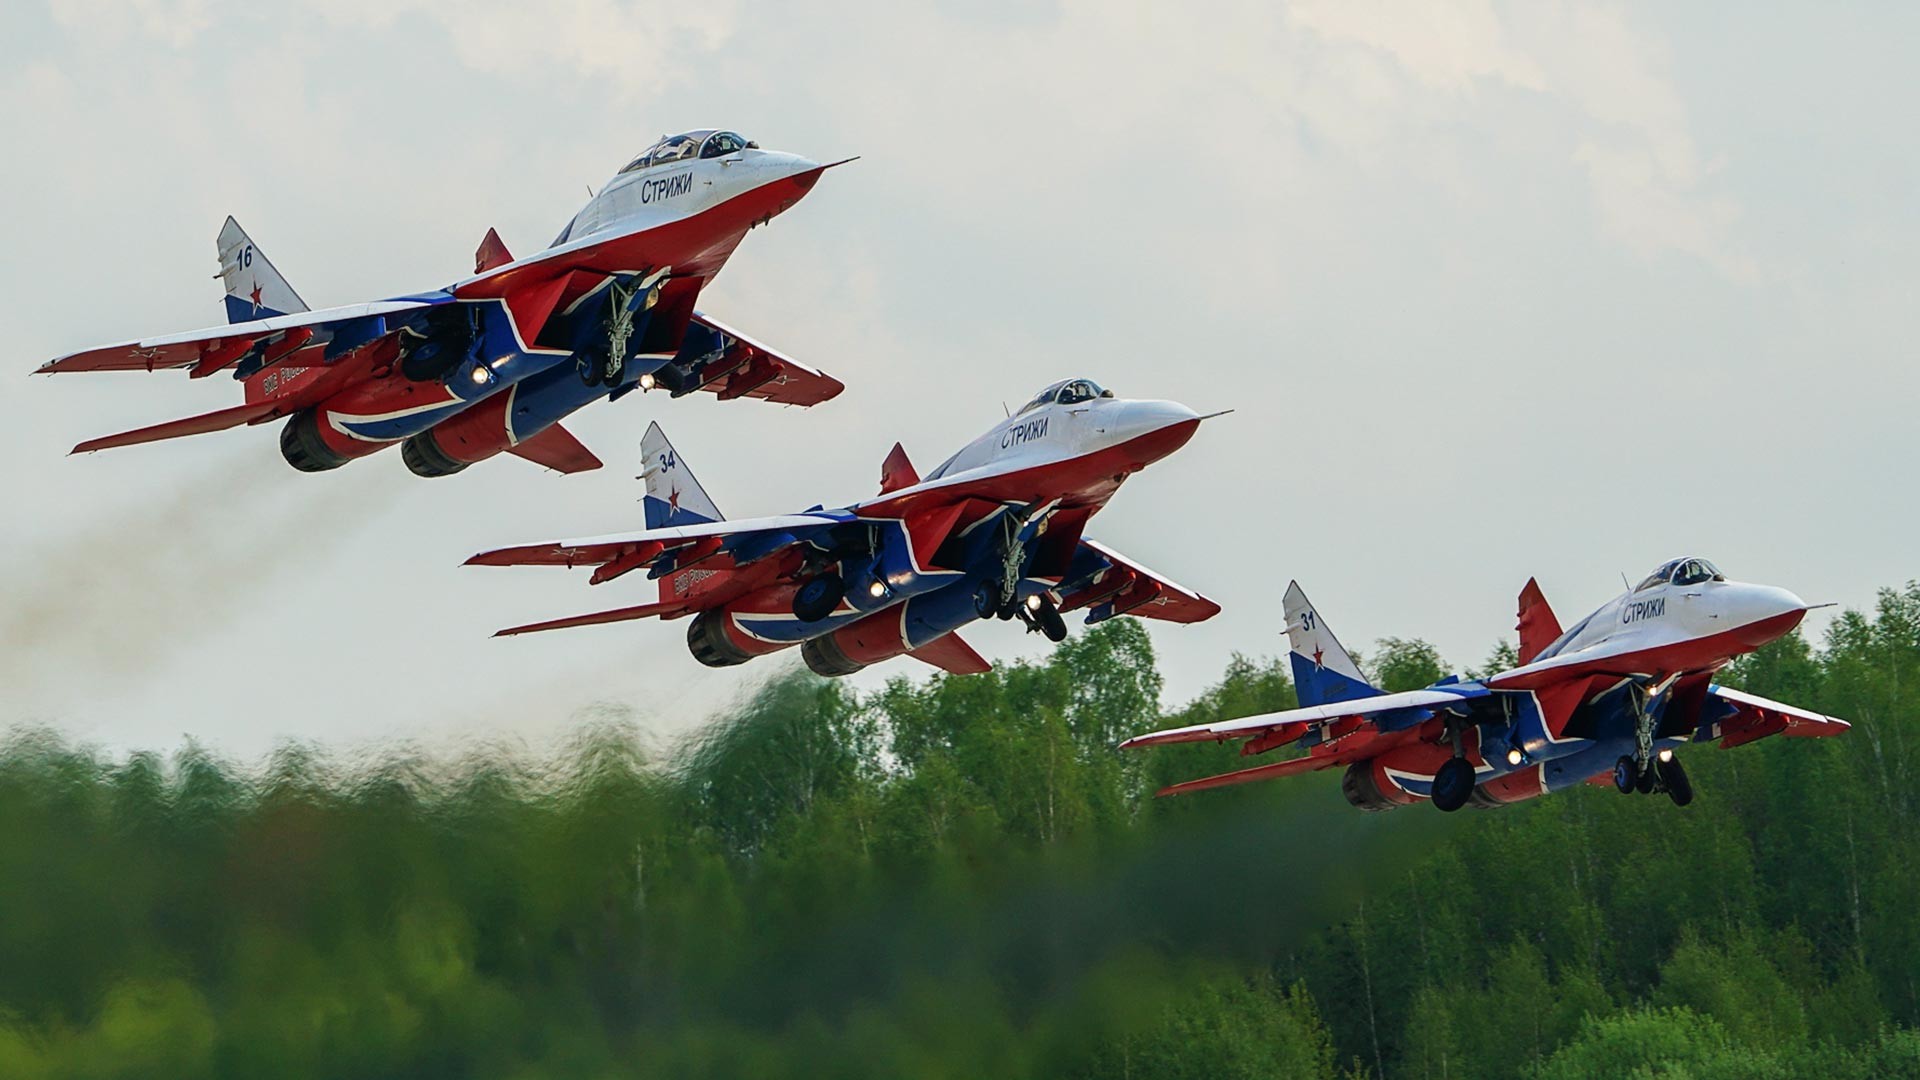 Ловци МиГ-29 пилотске групе „Стрижи“ изводе демонстрациони лет изнад аеродрома Кубинка. Пилотске групе „Стрижи“ и „Руски витезови“ ће у 2021. години обележити 30-годишњицу постојања.